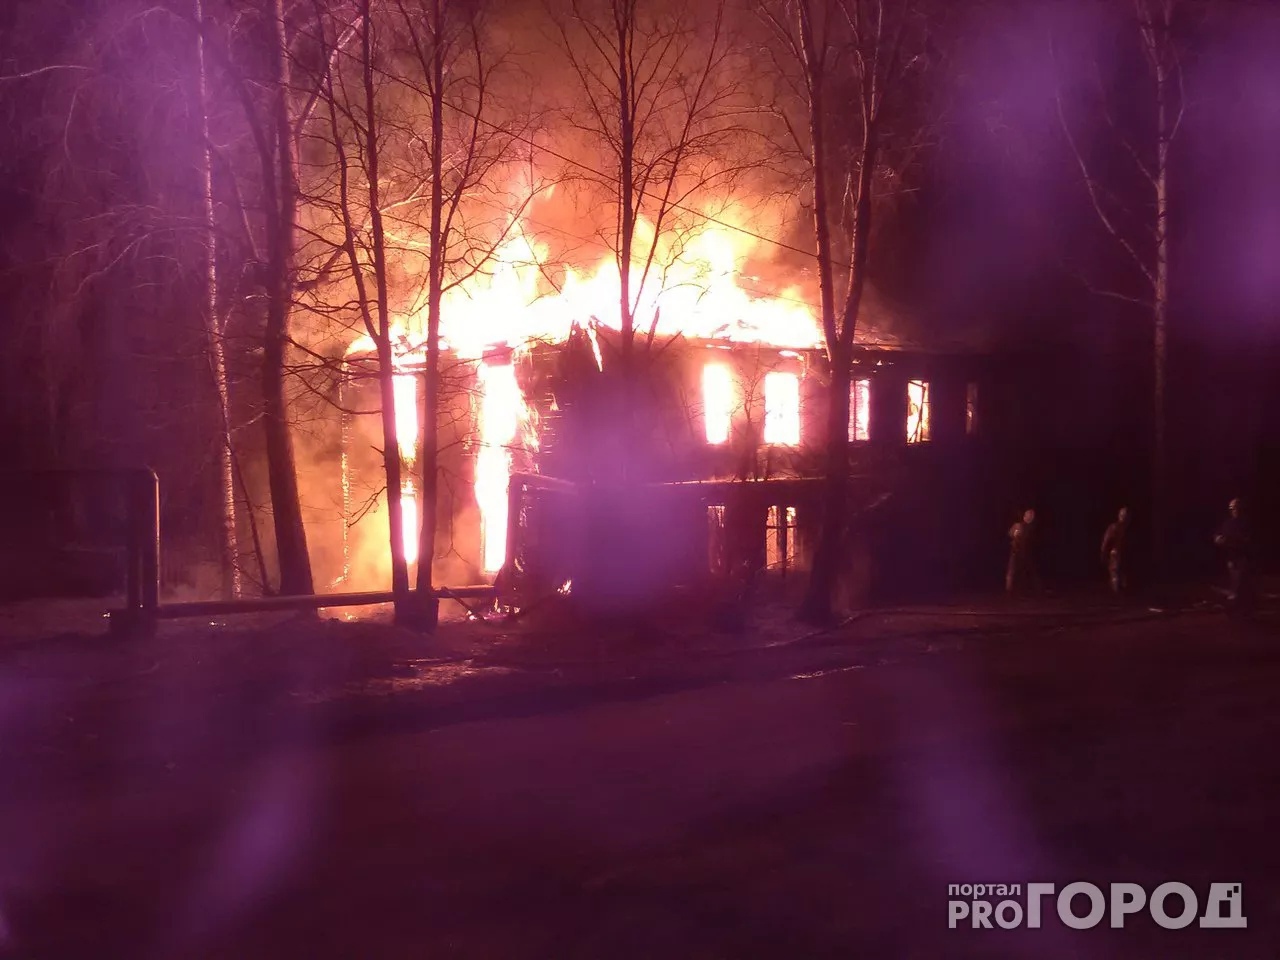 Вчерашний вечер был. Дом горит. Пожар прогород. Пожар в Кирове. Пожары в Коми за последние сутки.